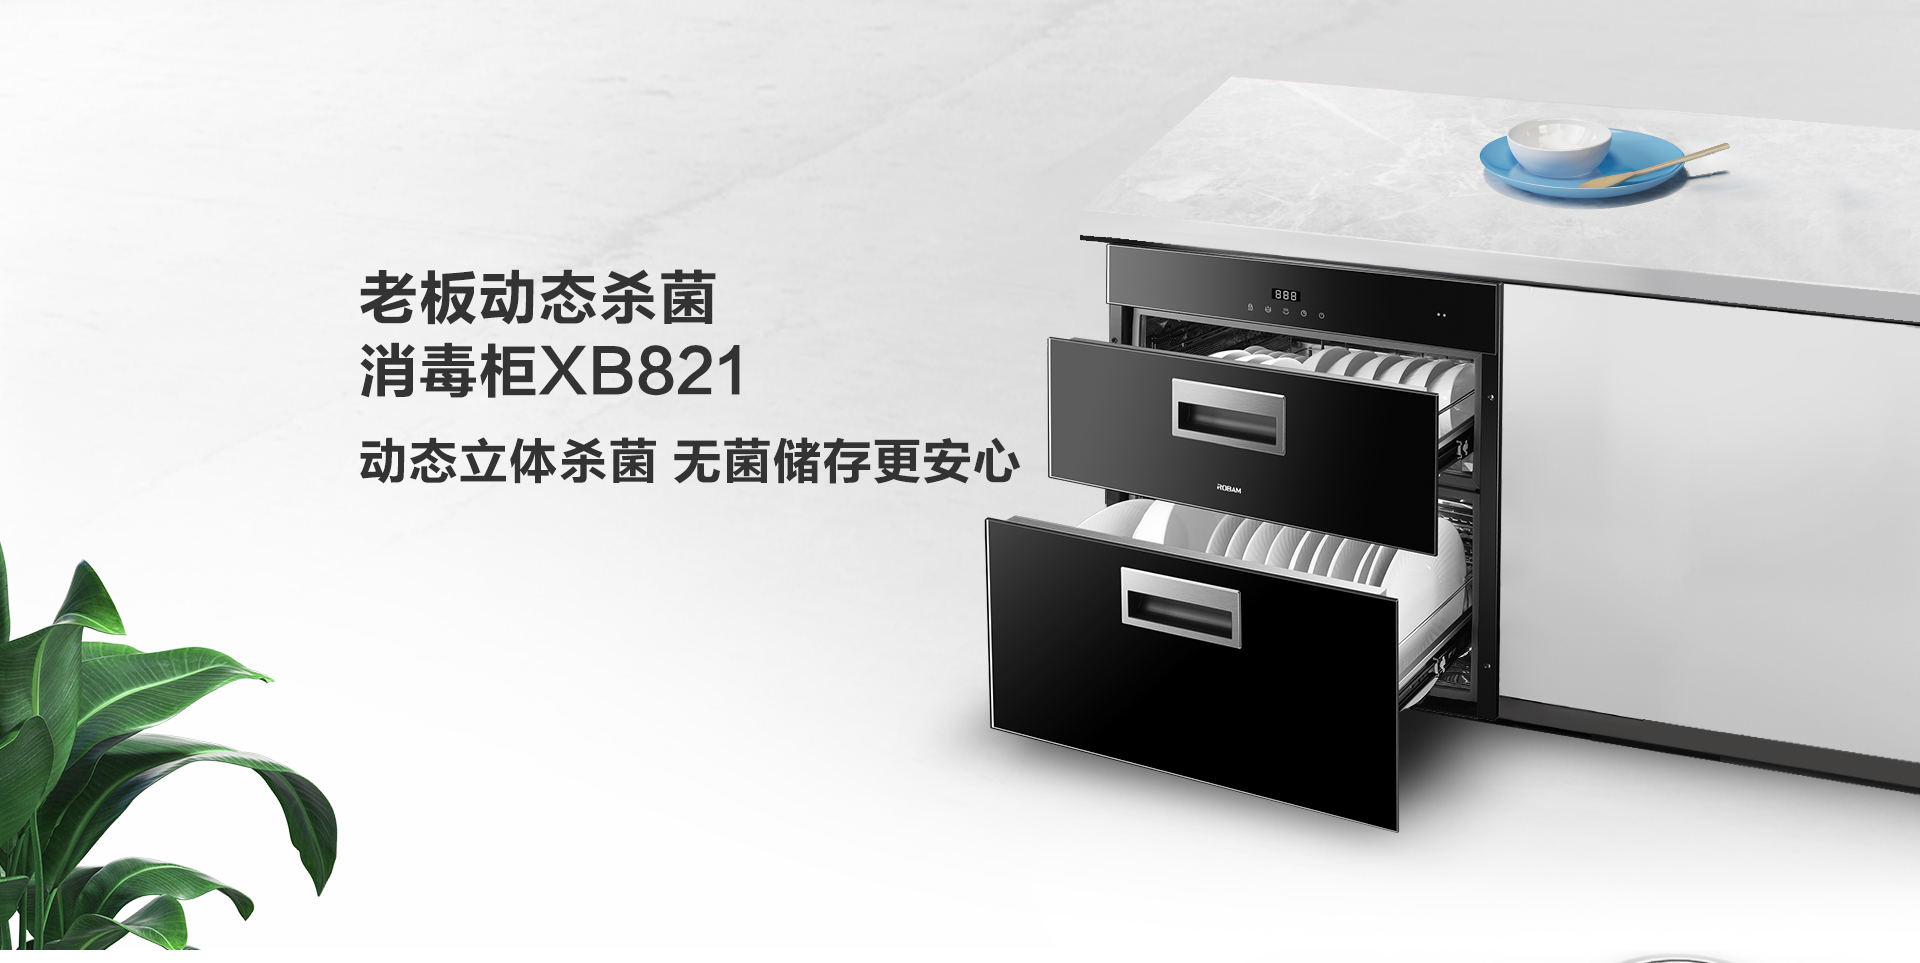 XB821消毒柜-上新-PC端-201116_01.jpg